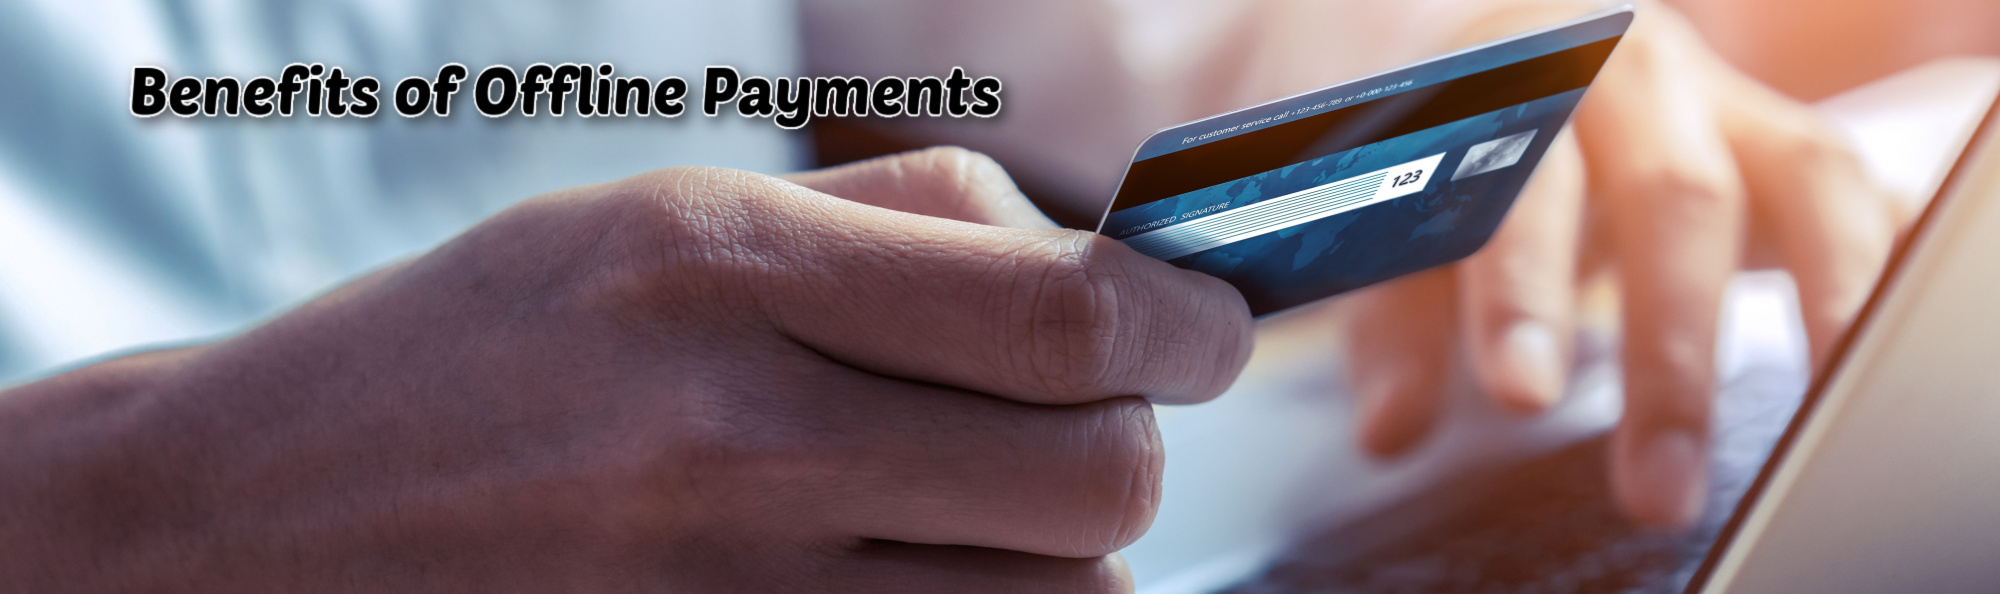 image of offline payments benefits